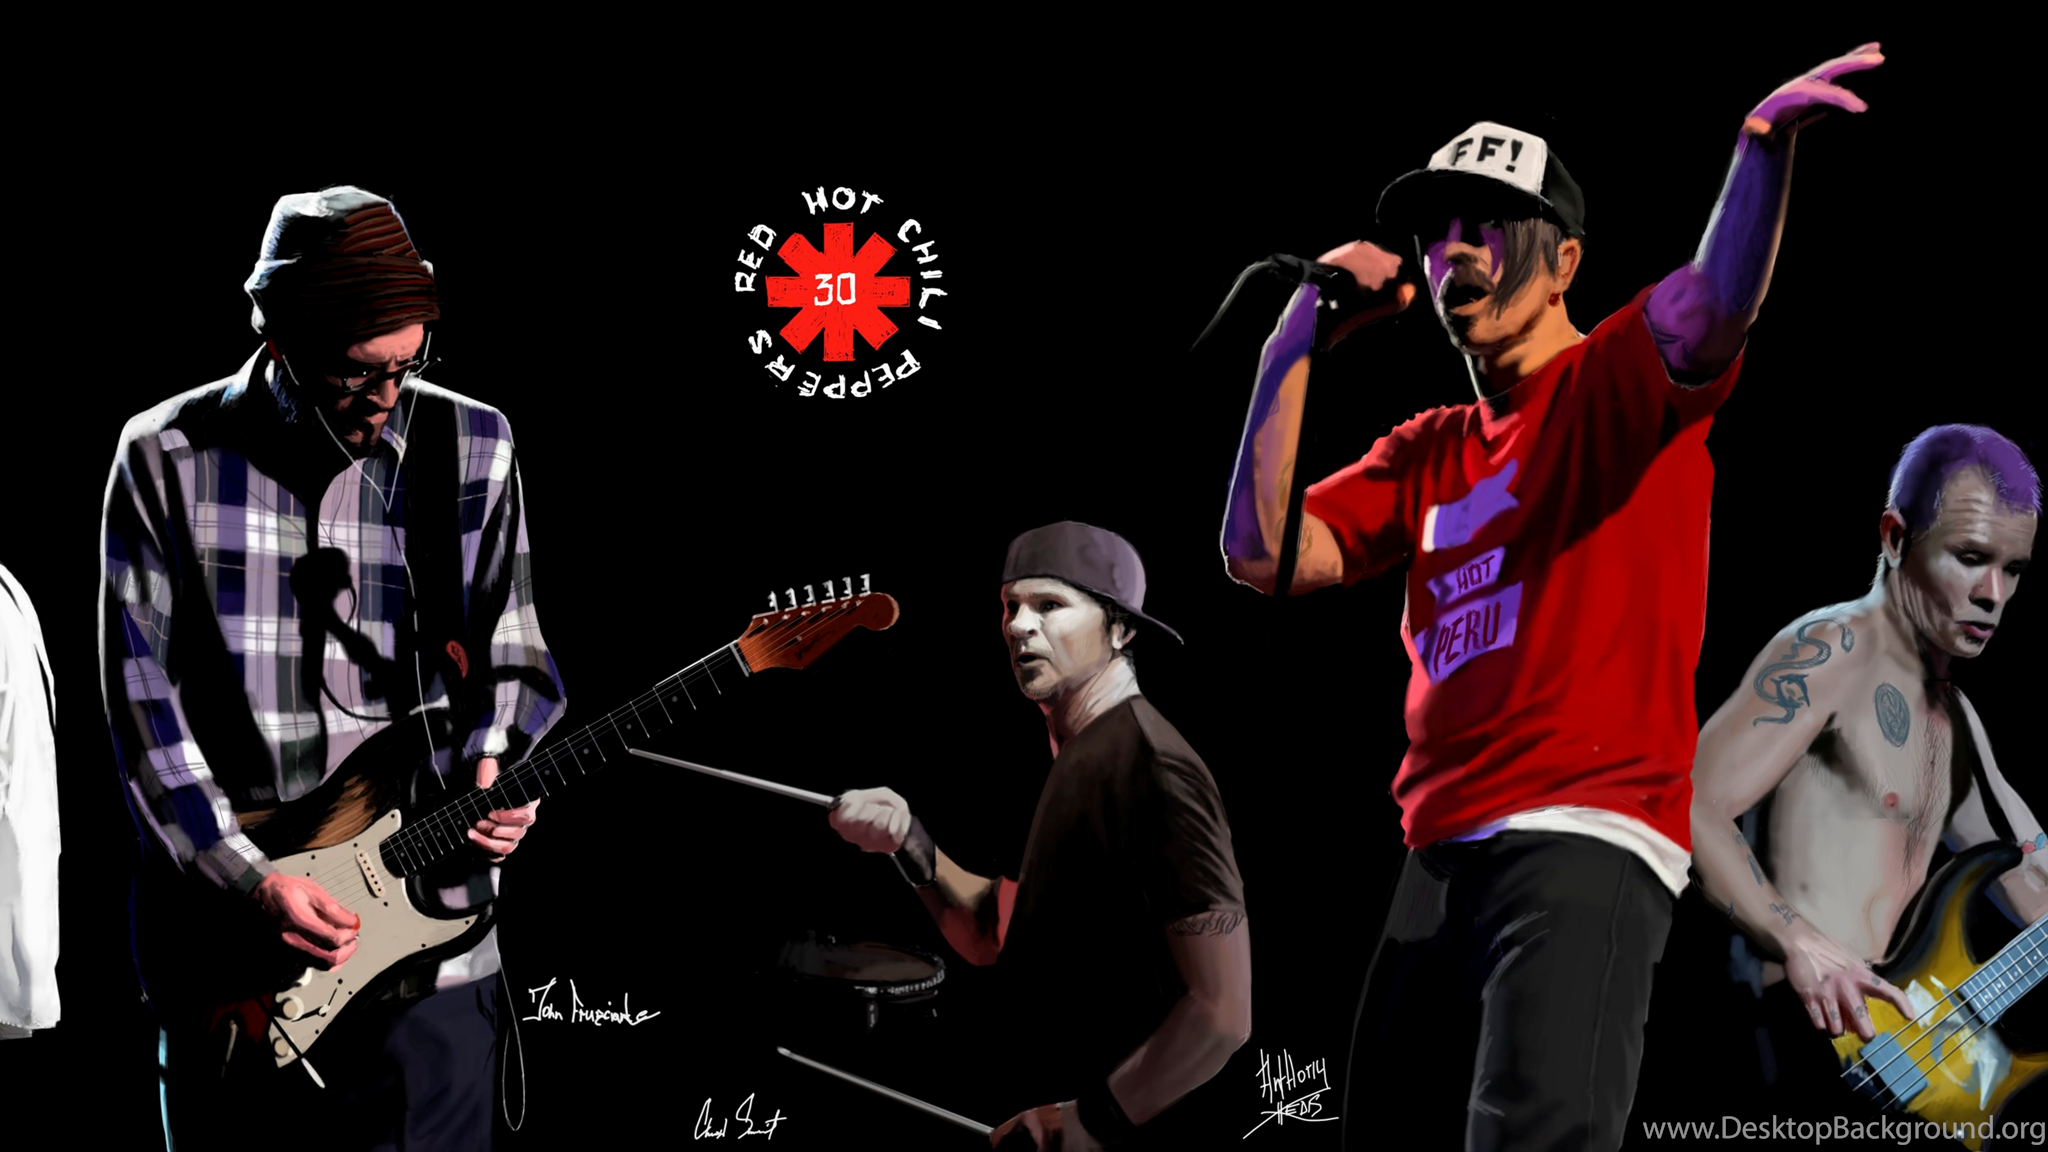 Ред хот Чили пеперс. Red hot Chili Peppers концерт. Red hot Chili Peppers Concert. Концерт Чили. Red hot peppers концерт